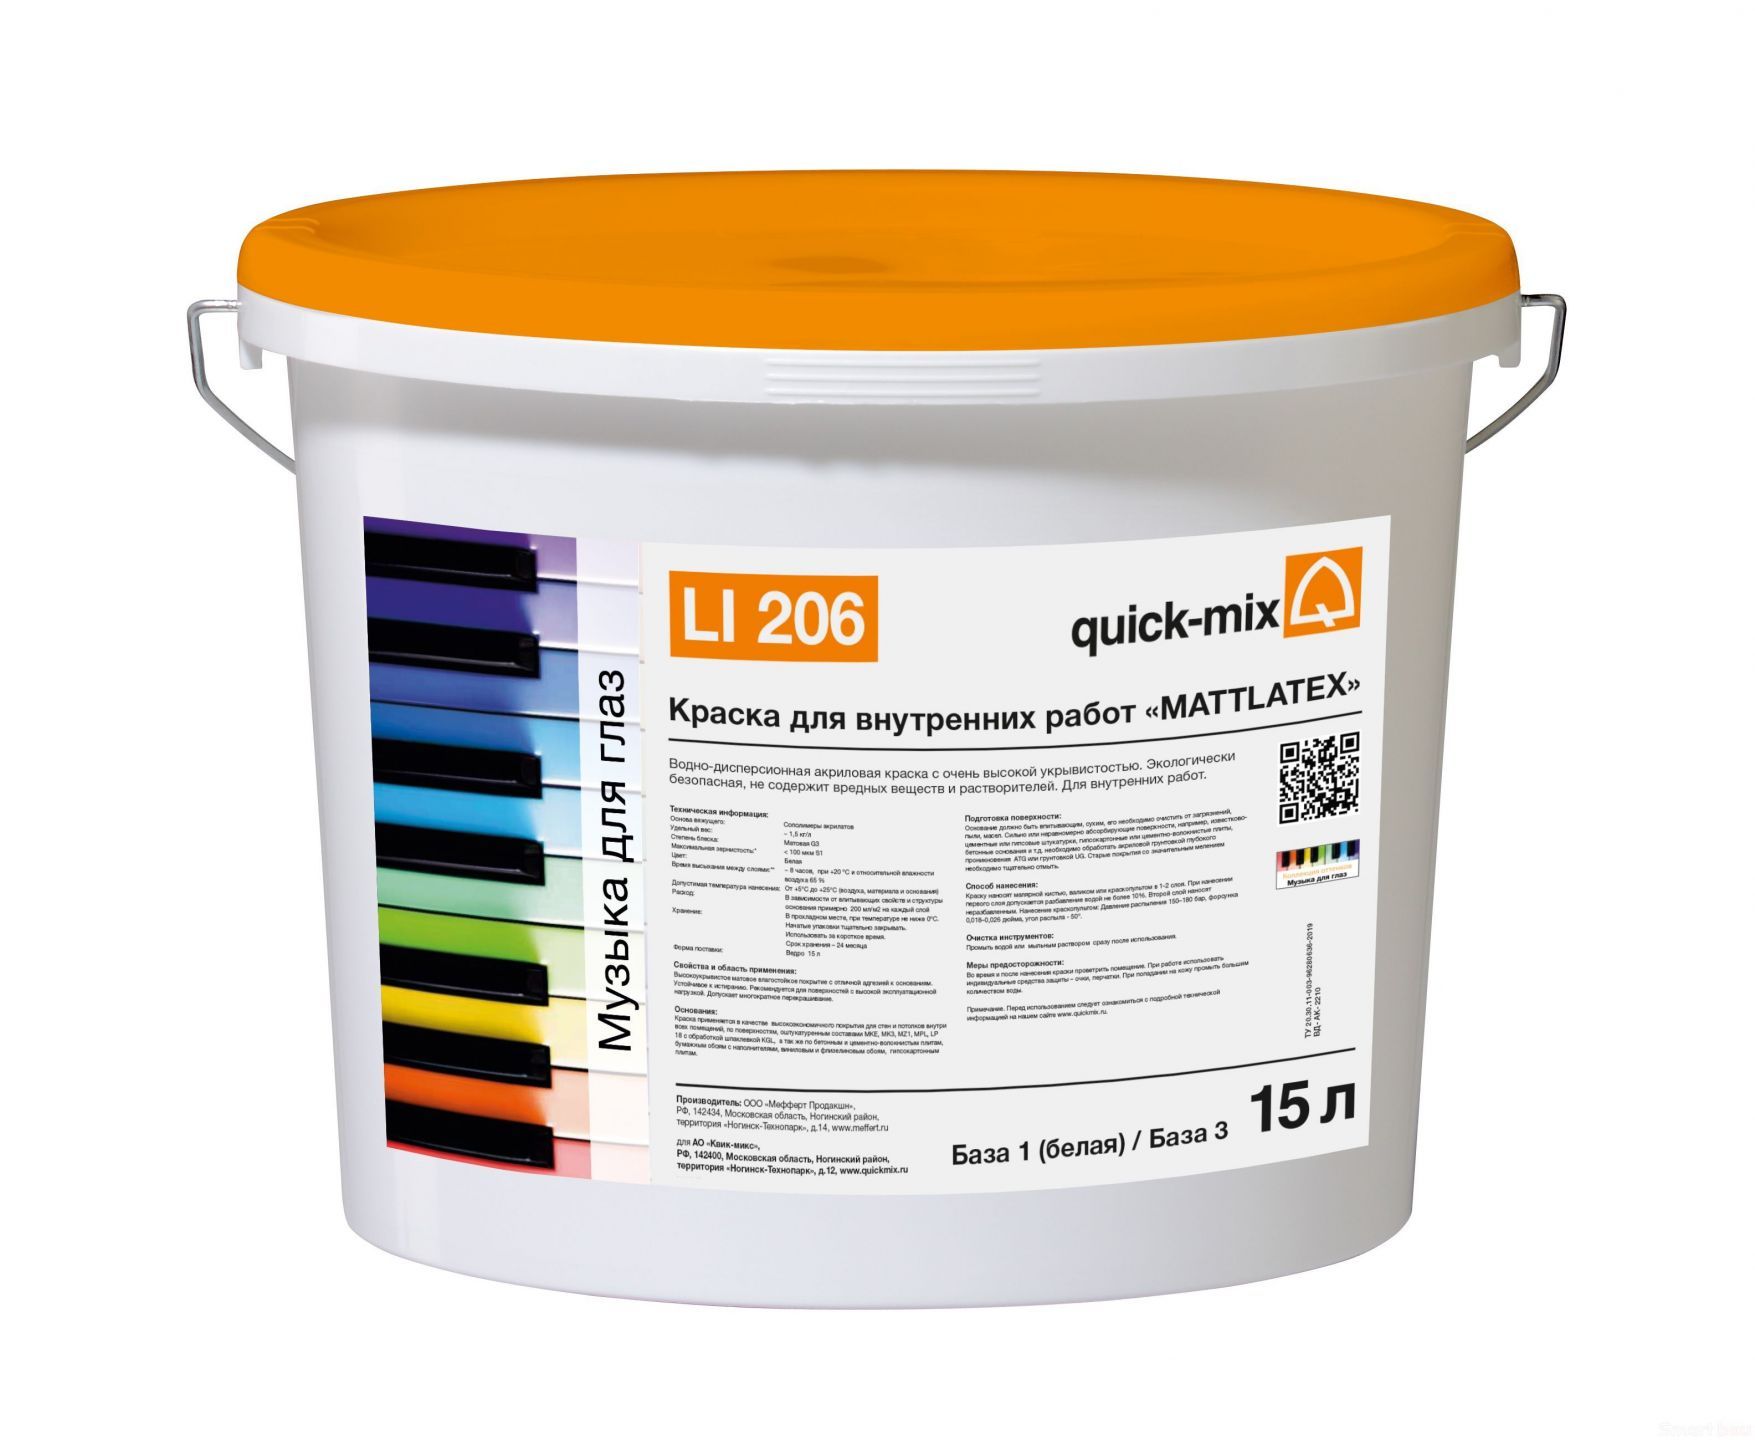 Краска для внутренних работ quick-mix Mattlatex LI 206